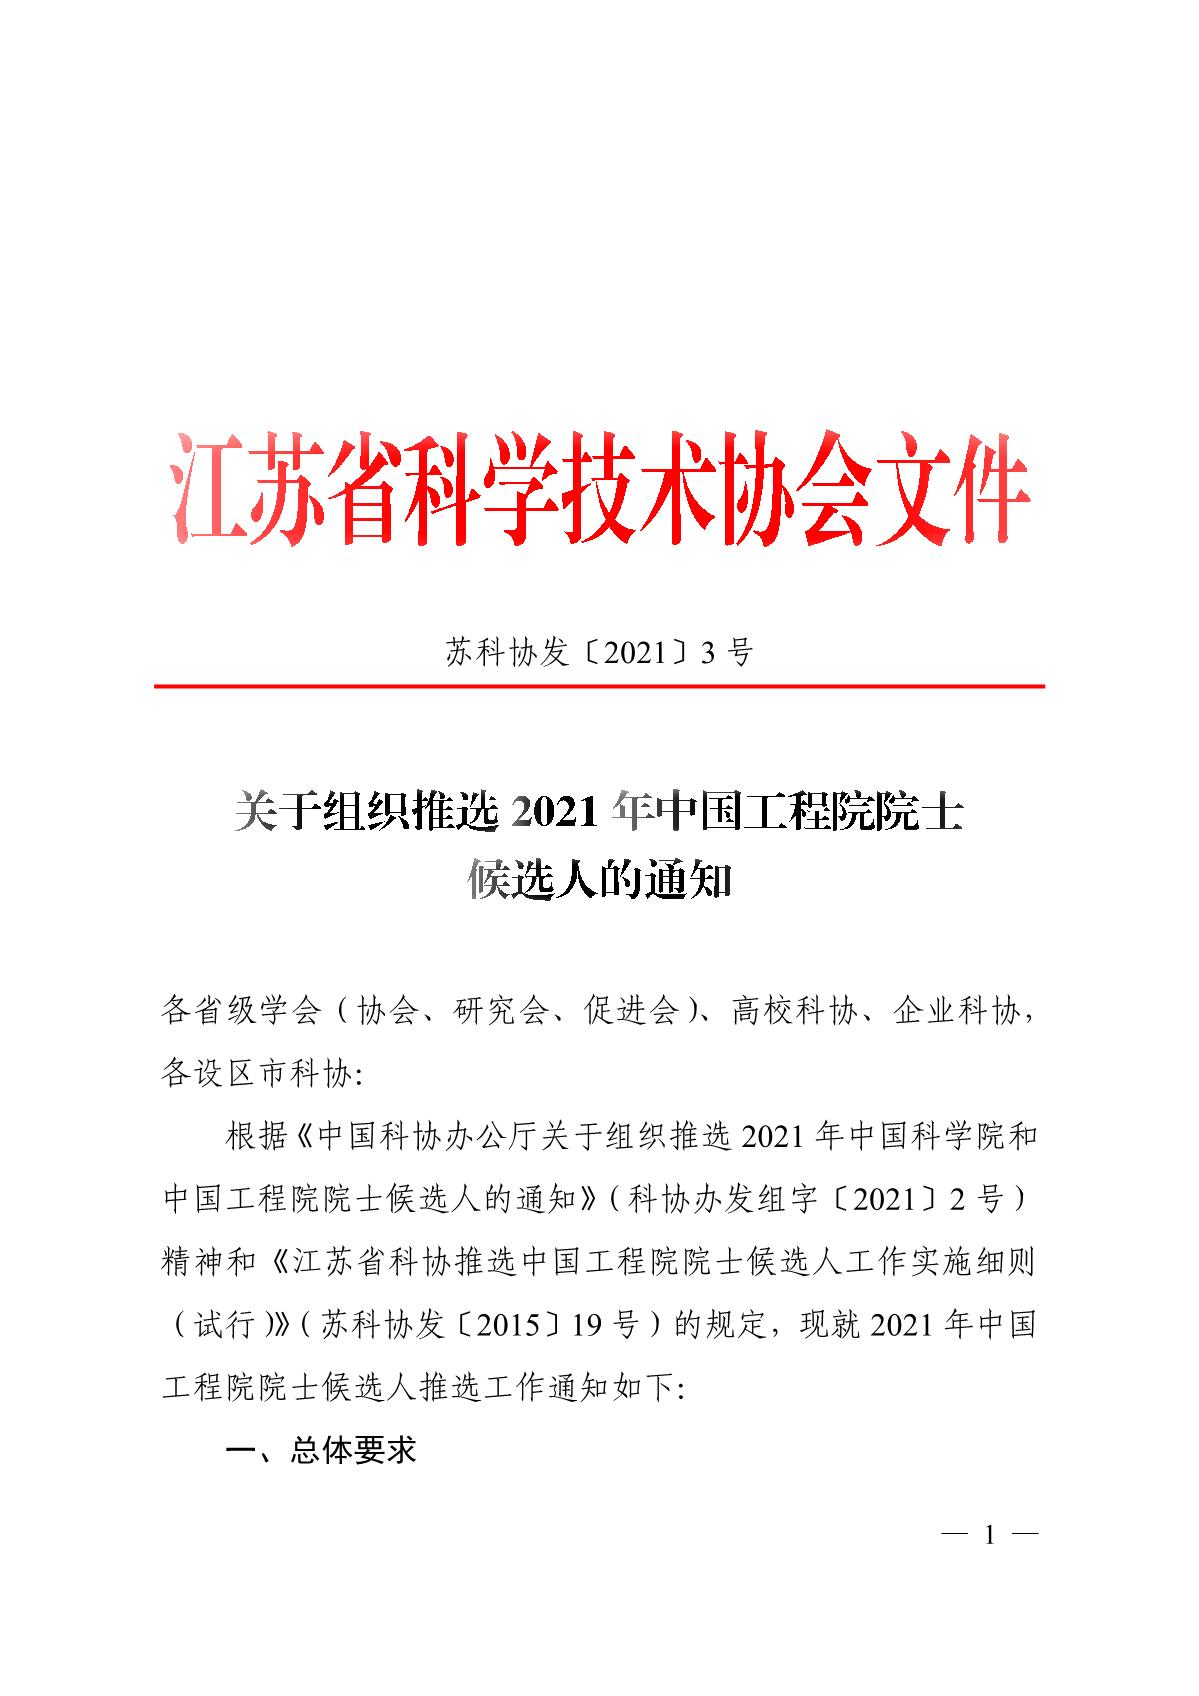 关于组织推选2021年中国工程院院士候选人的通知_1.JPG